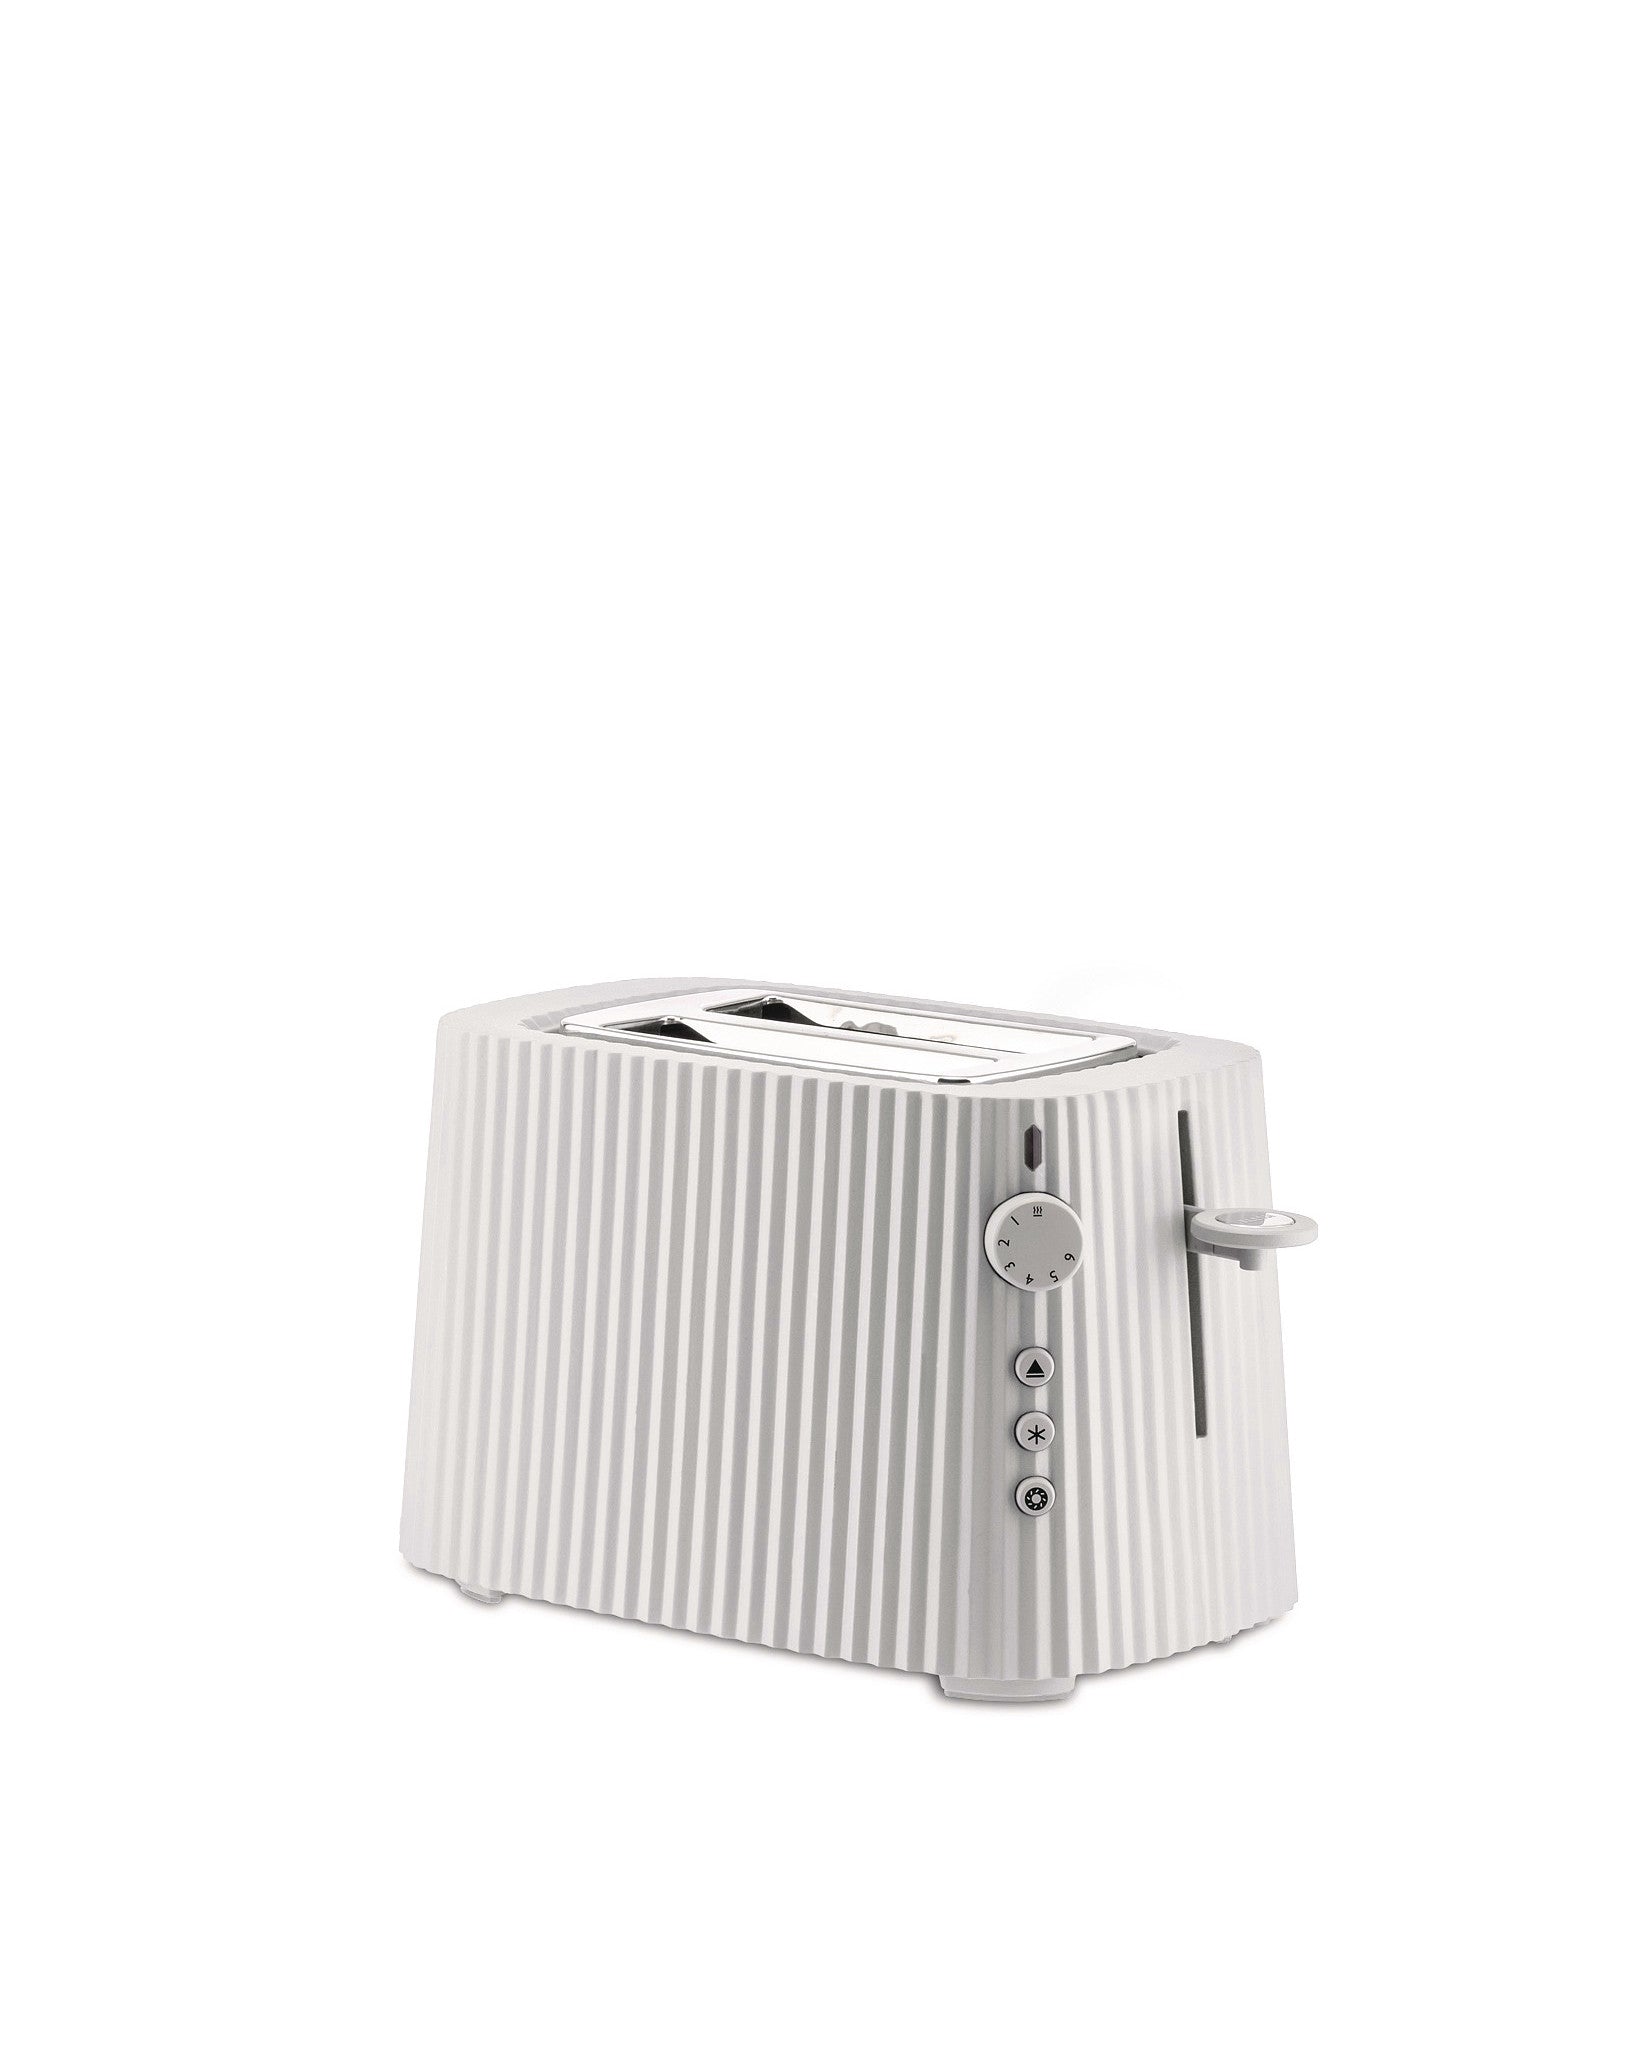 Elegant gestalteter Statement-Toaster in Weiß. Elektrischer Zwei-Scheiben-Toaster von Michele De Lucchi mit seinem ikonischen, gefalteten Design.